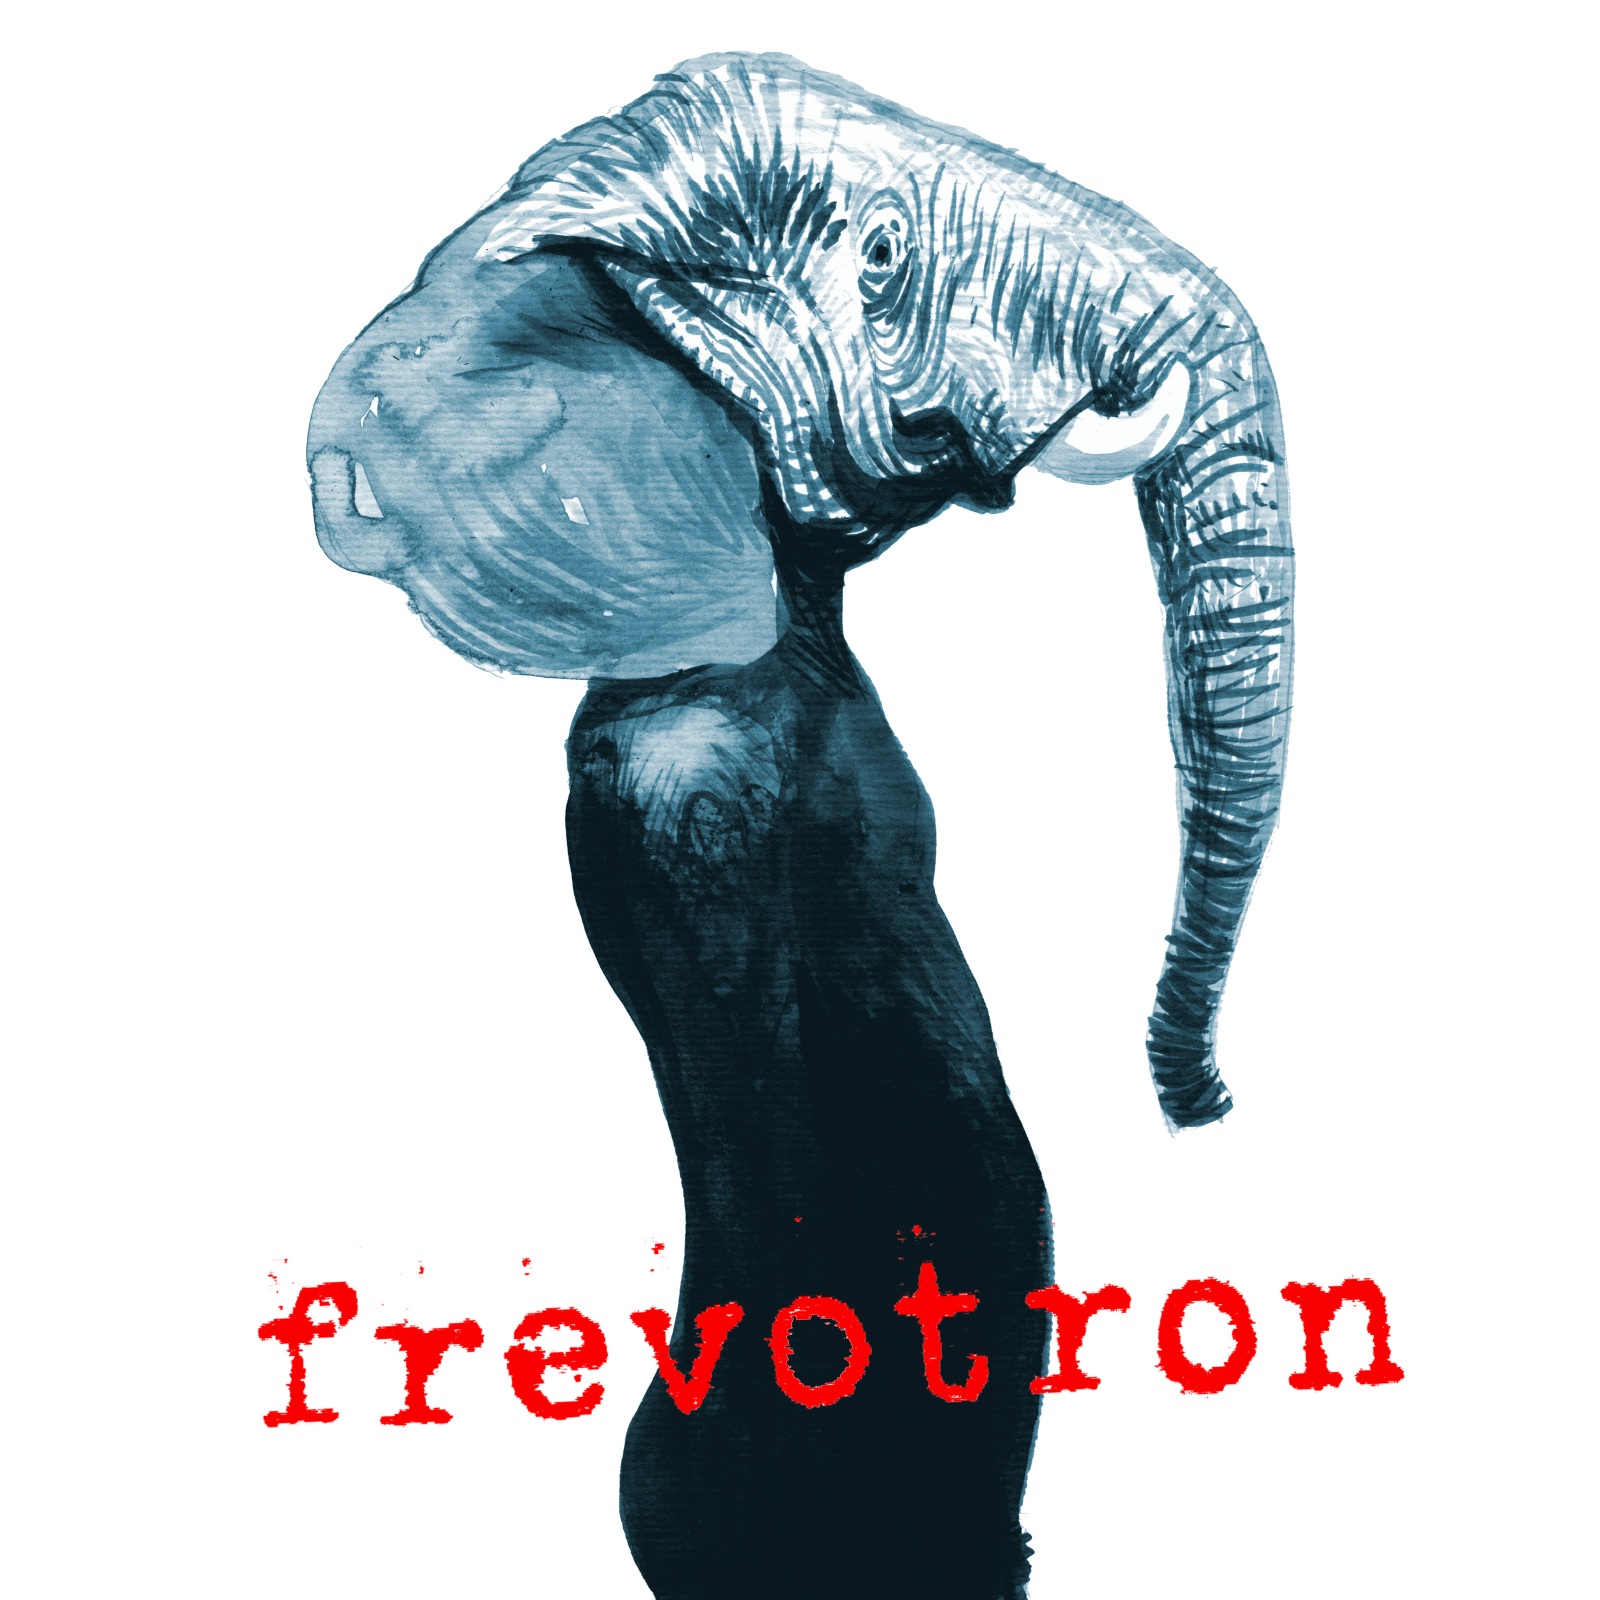 Frevotron